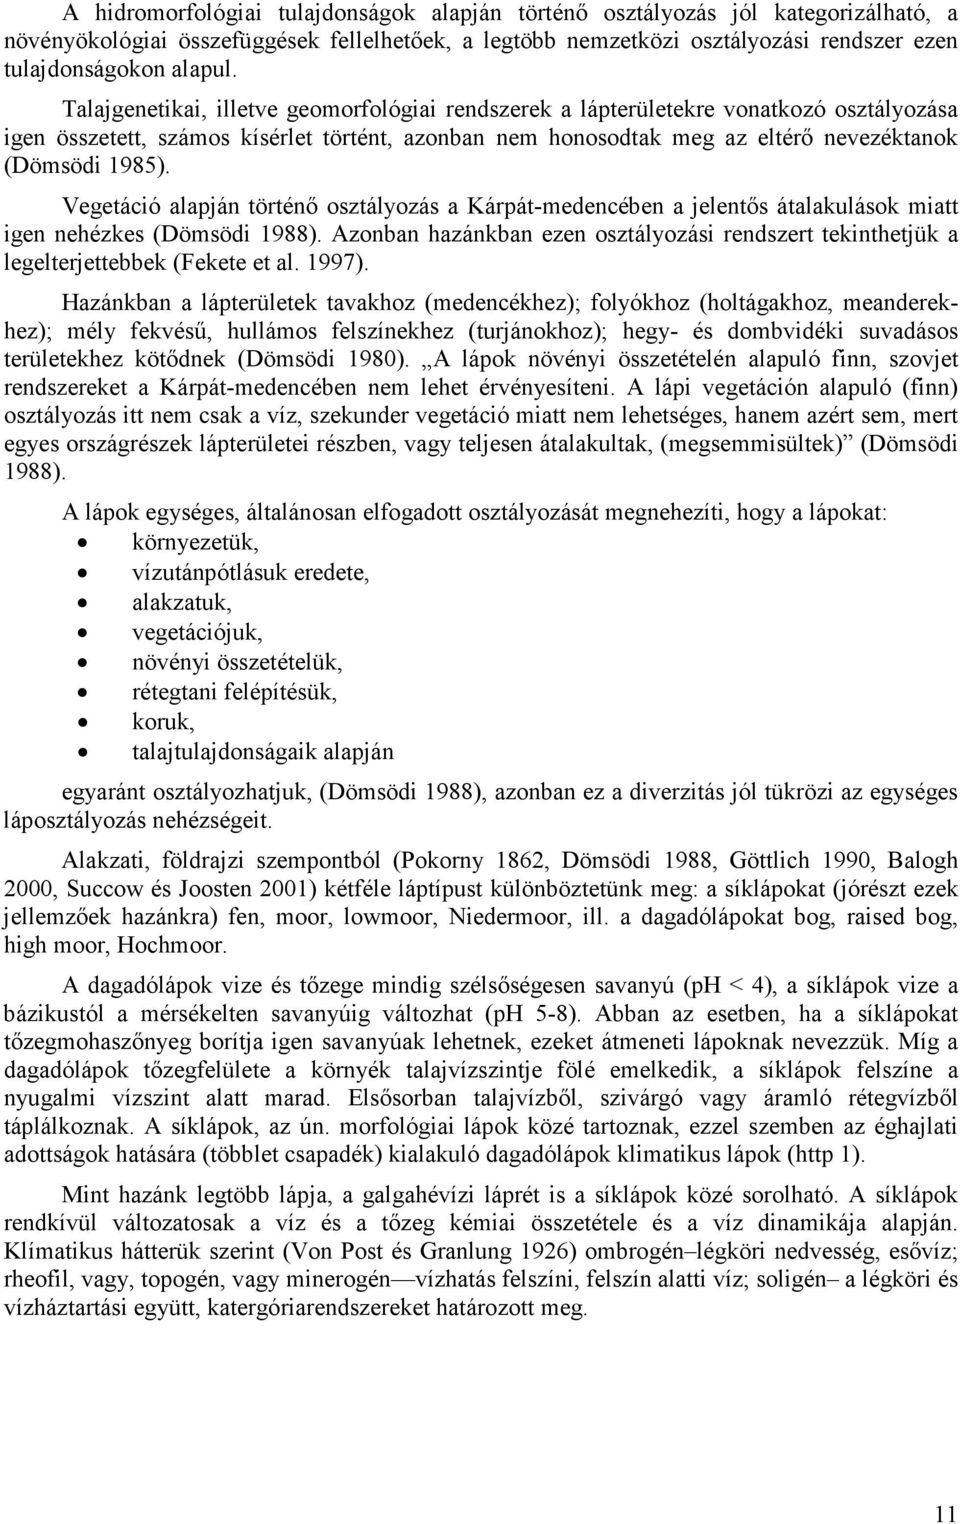 Vegetáció alapján történı osztályozás a Kárpát-medencében a jelentıs átalakulások miatt igen nehézkes (Dömsödi 1988).